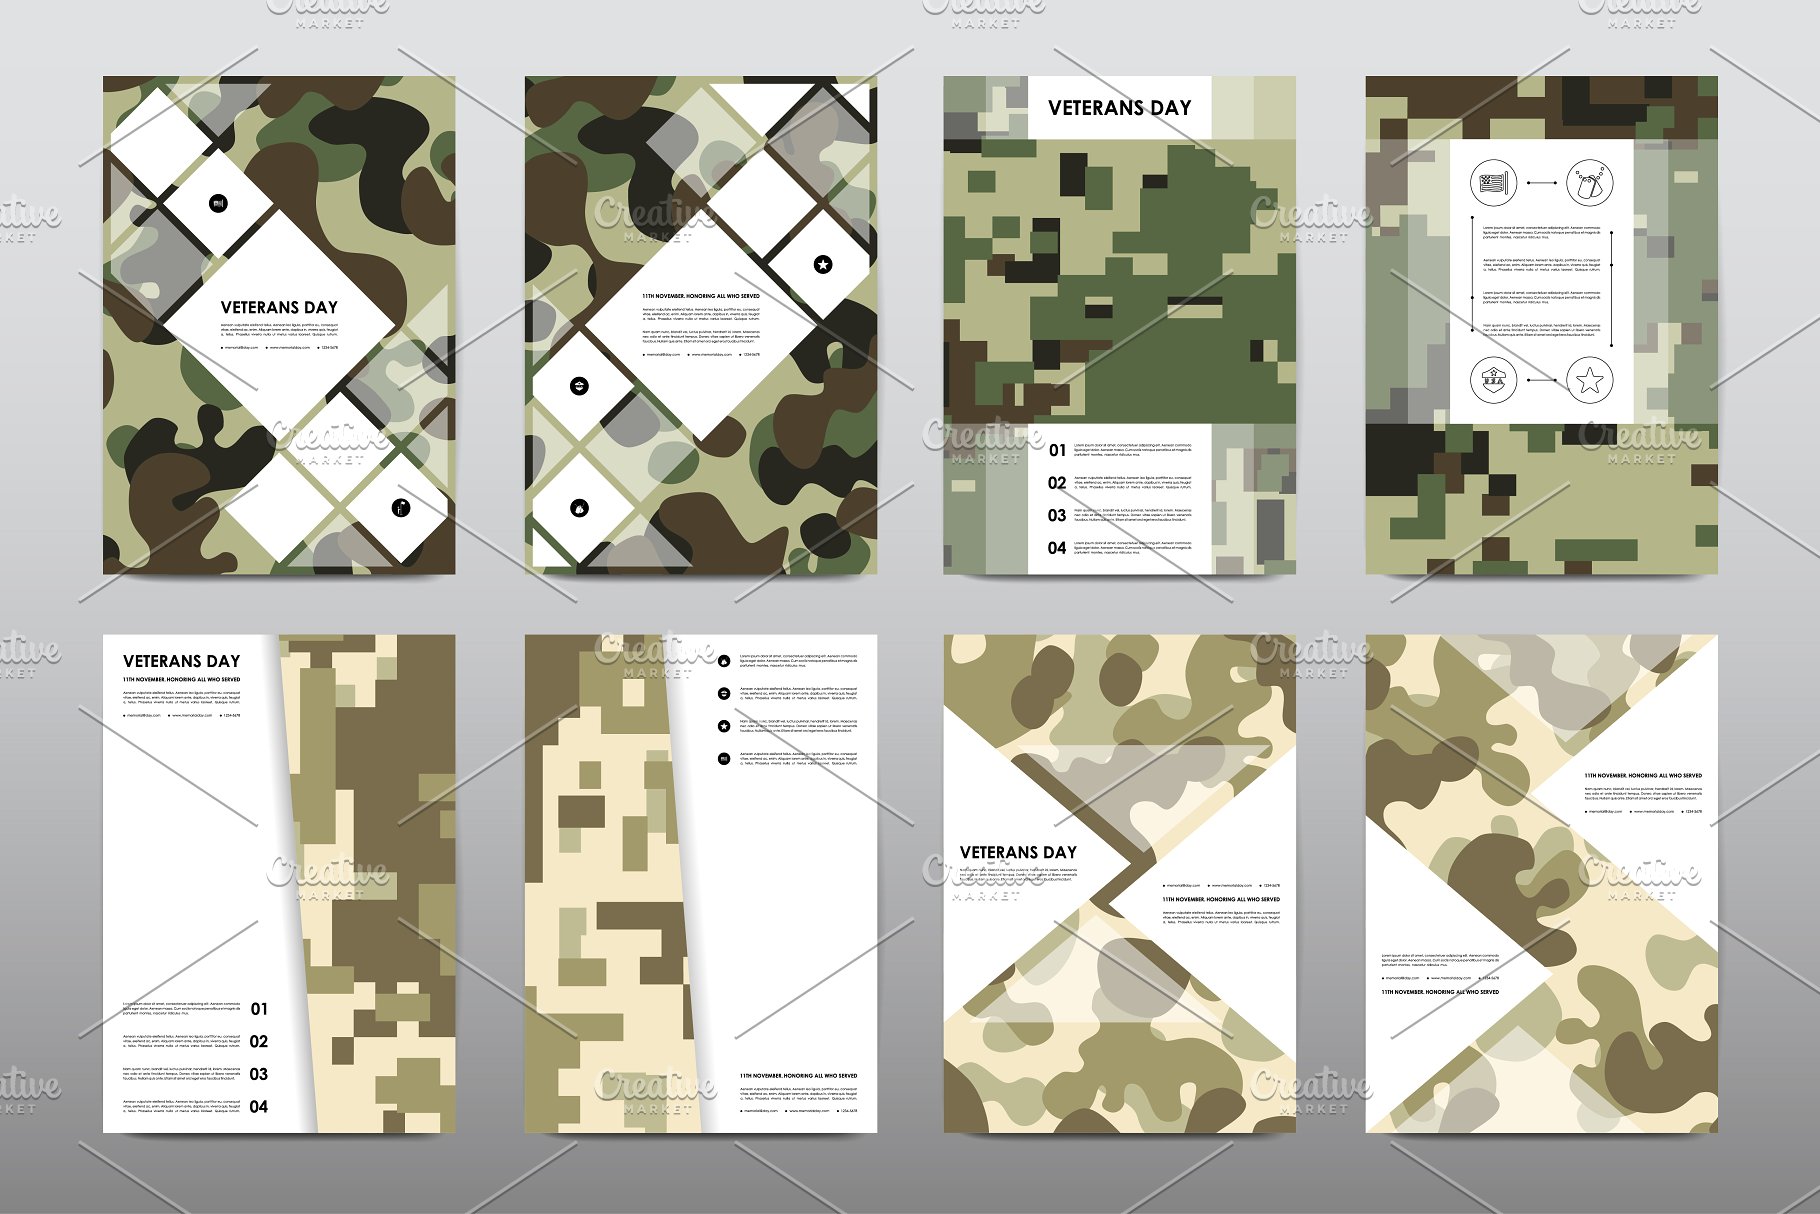 40+老兵节军人宣传小册模板 Veteran’s Day Brochures Bundle插图(30)